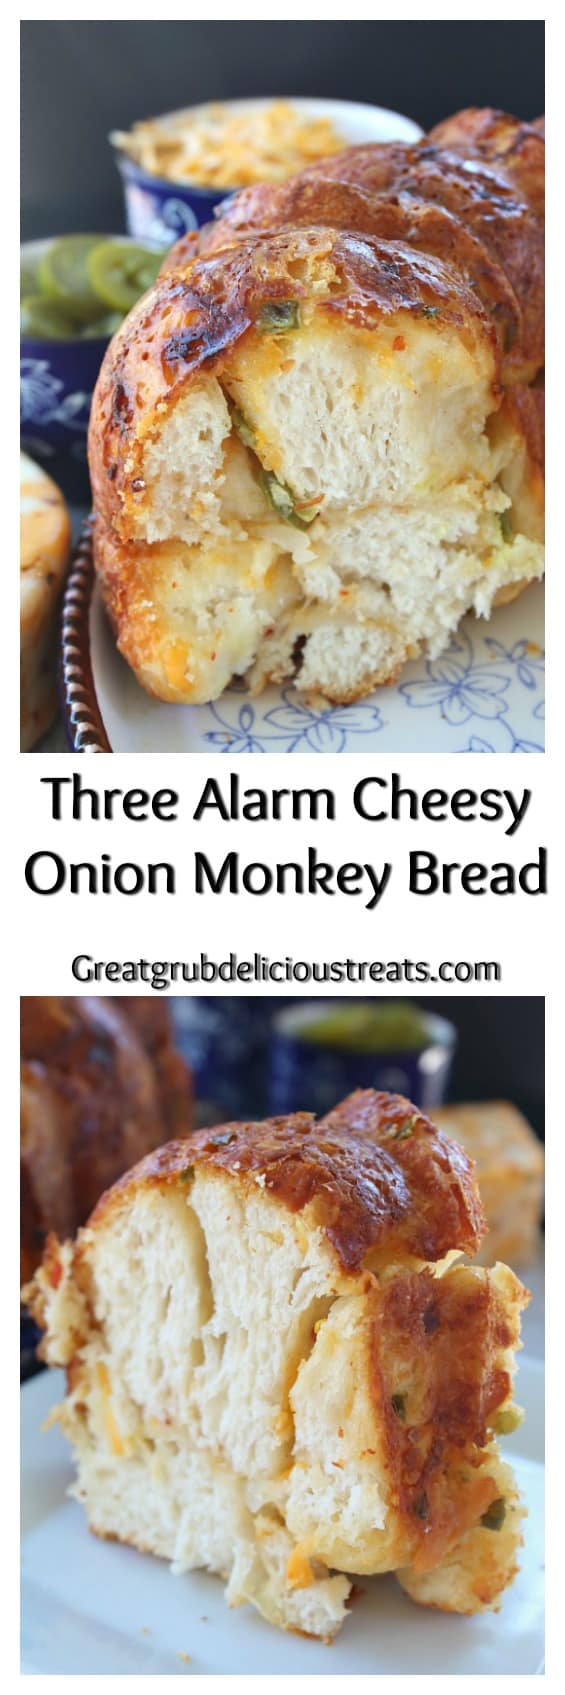 Three Alarm Cheesy Onion Monkey Bread